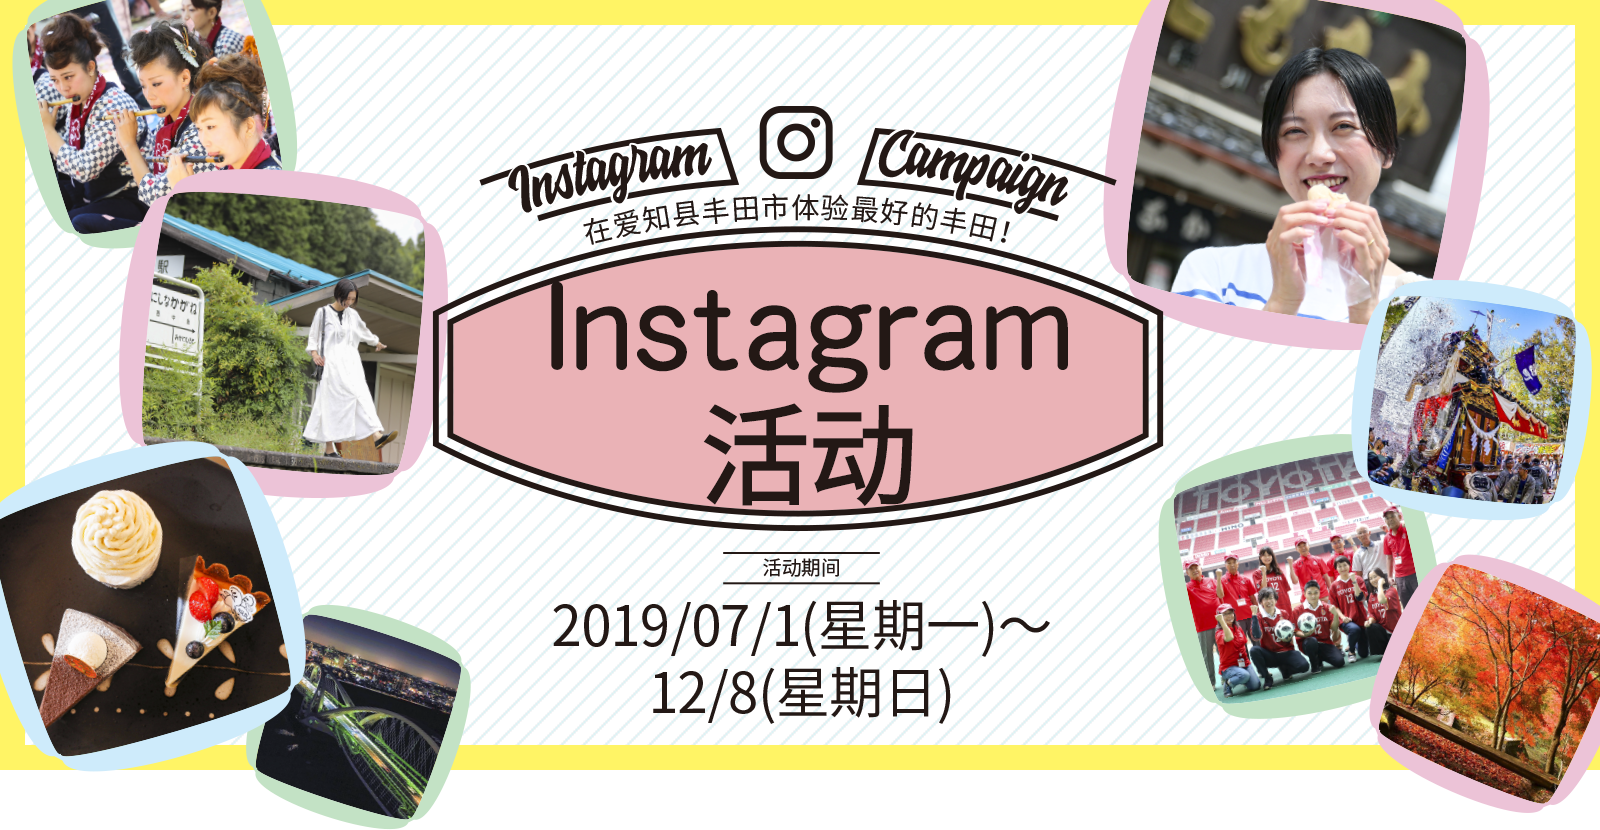 丰田旅游 Instagram活动